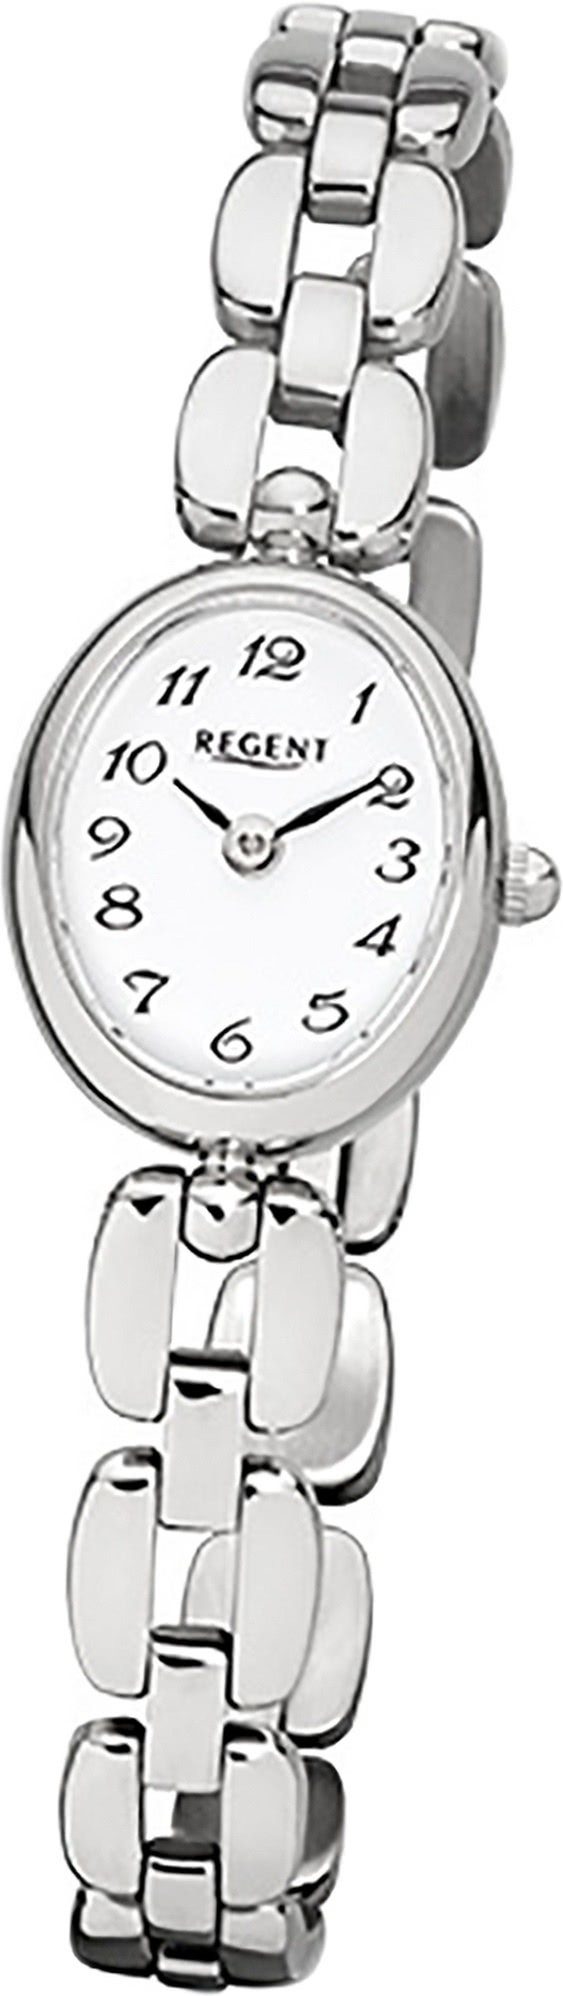 Uhr ovales Quarzuhr, Regent Regent Edelstahlarmband, 19x16mm), (ca. Stahl Damen El Quarzuhr Damenuhr Gehäuse, F-966 klein mit